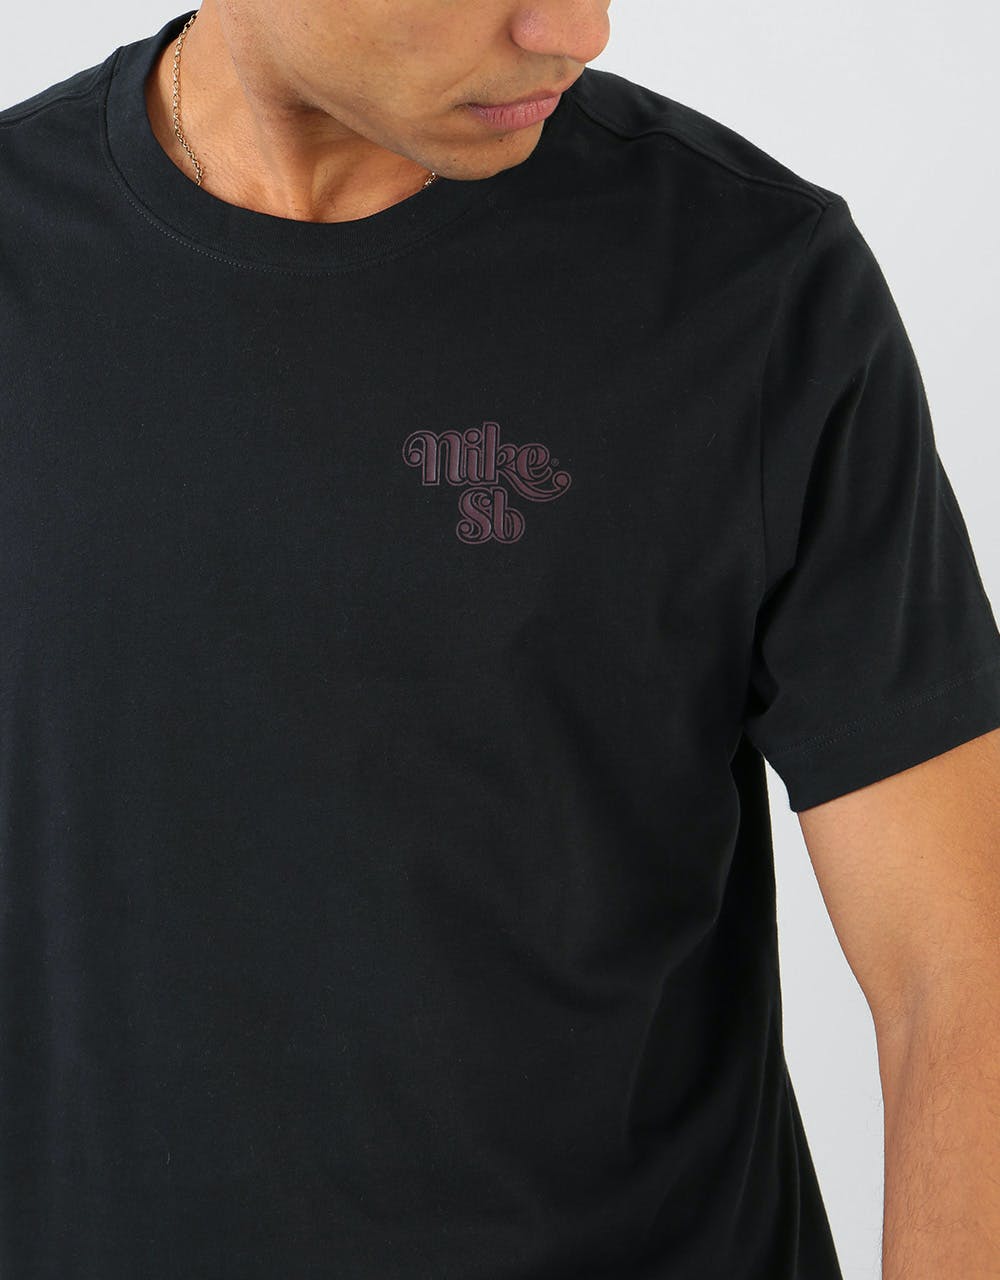 Nike SB Sunrise T-Shirt - Black/Mahogany